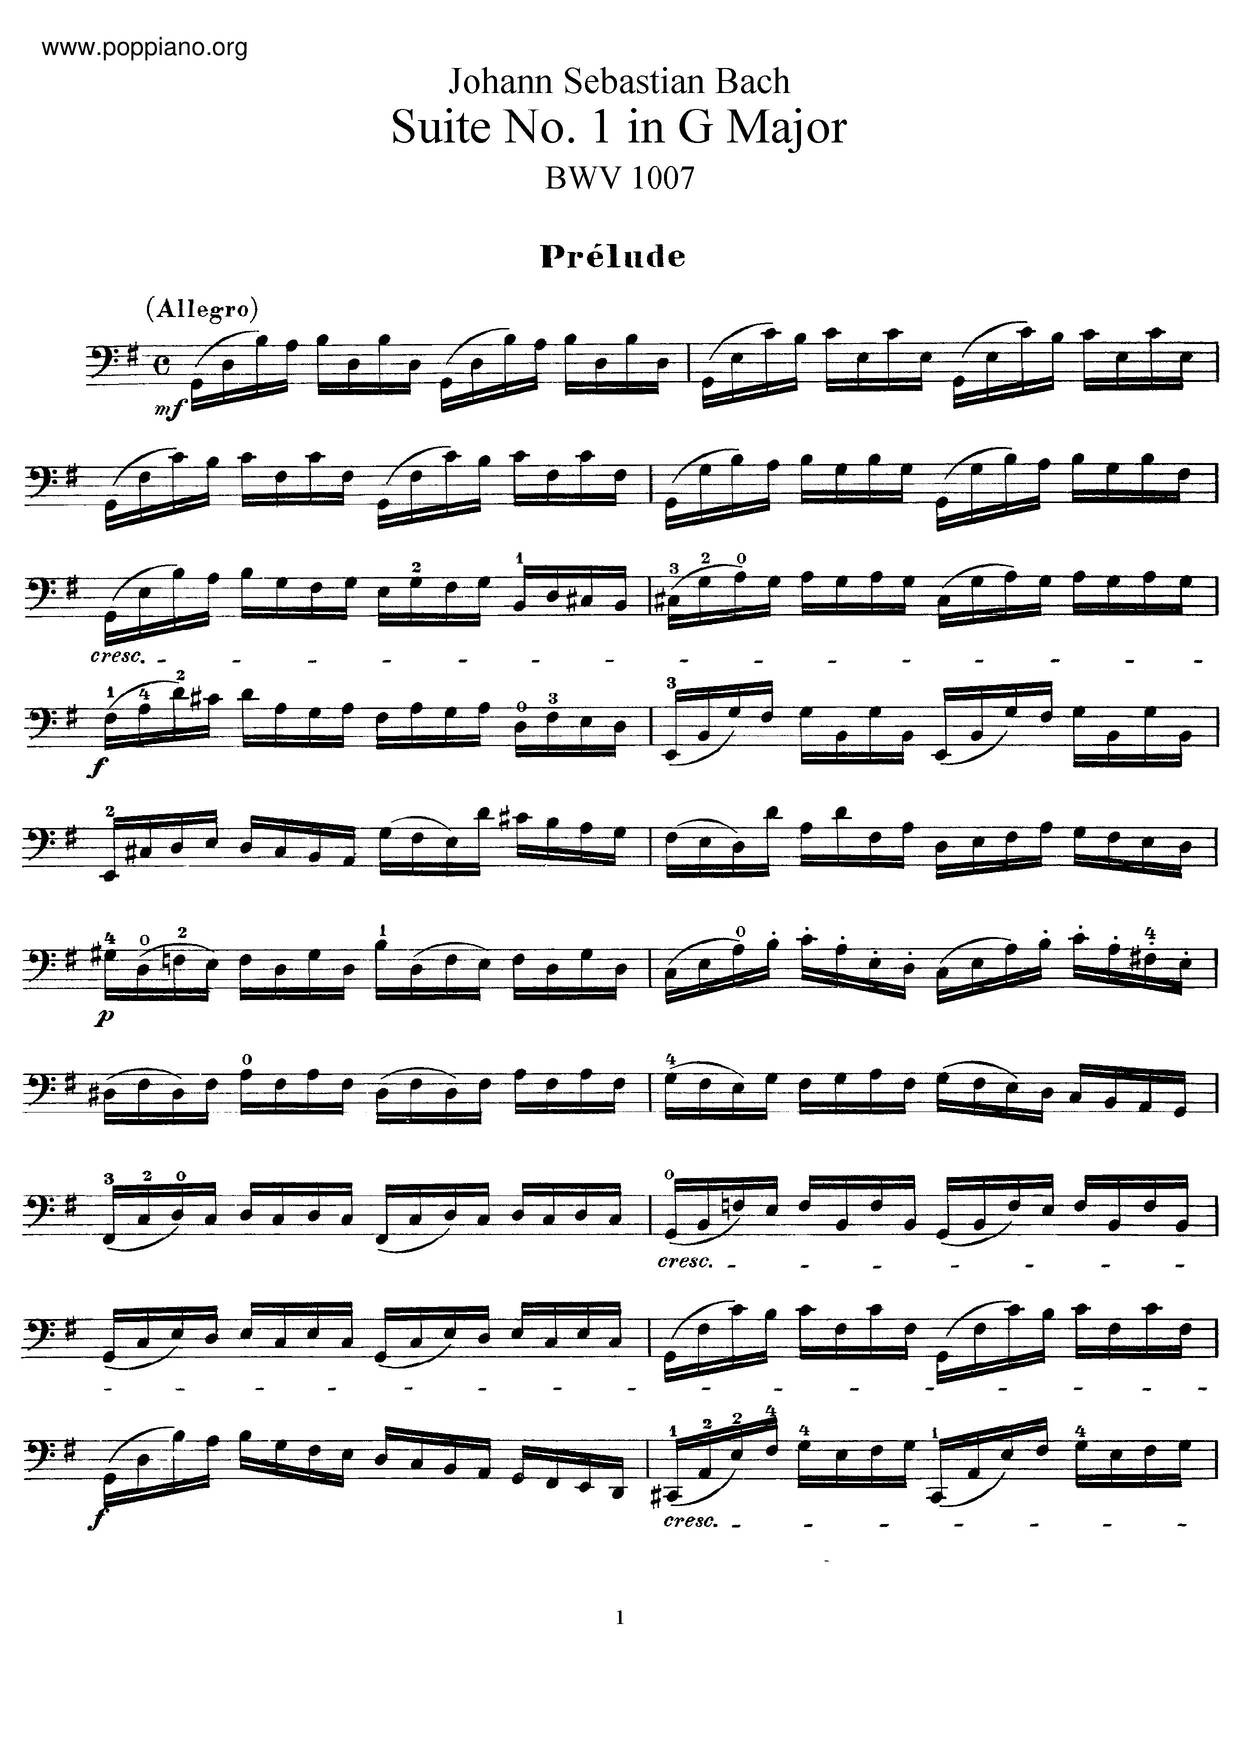 Unaccompanied Cello Suite No. 1 in G major, BWV 1007: I. Prélude Score